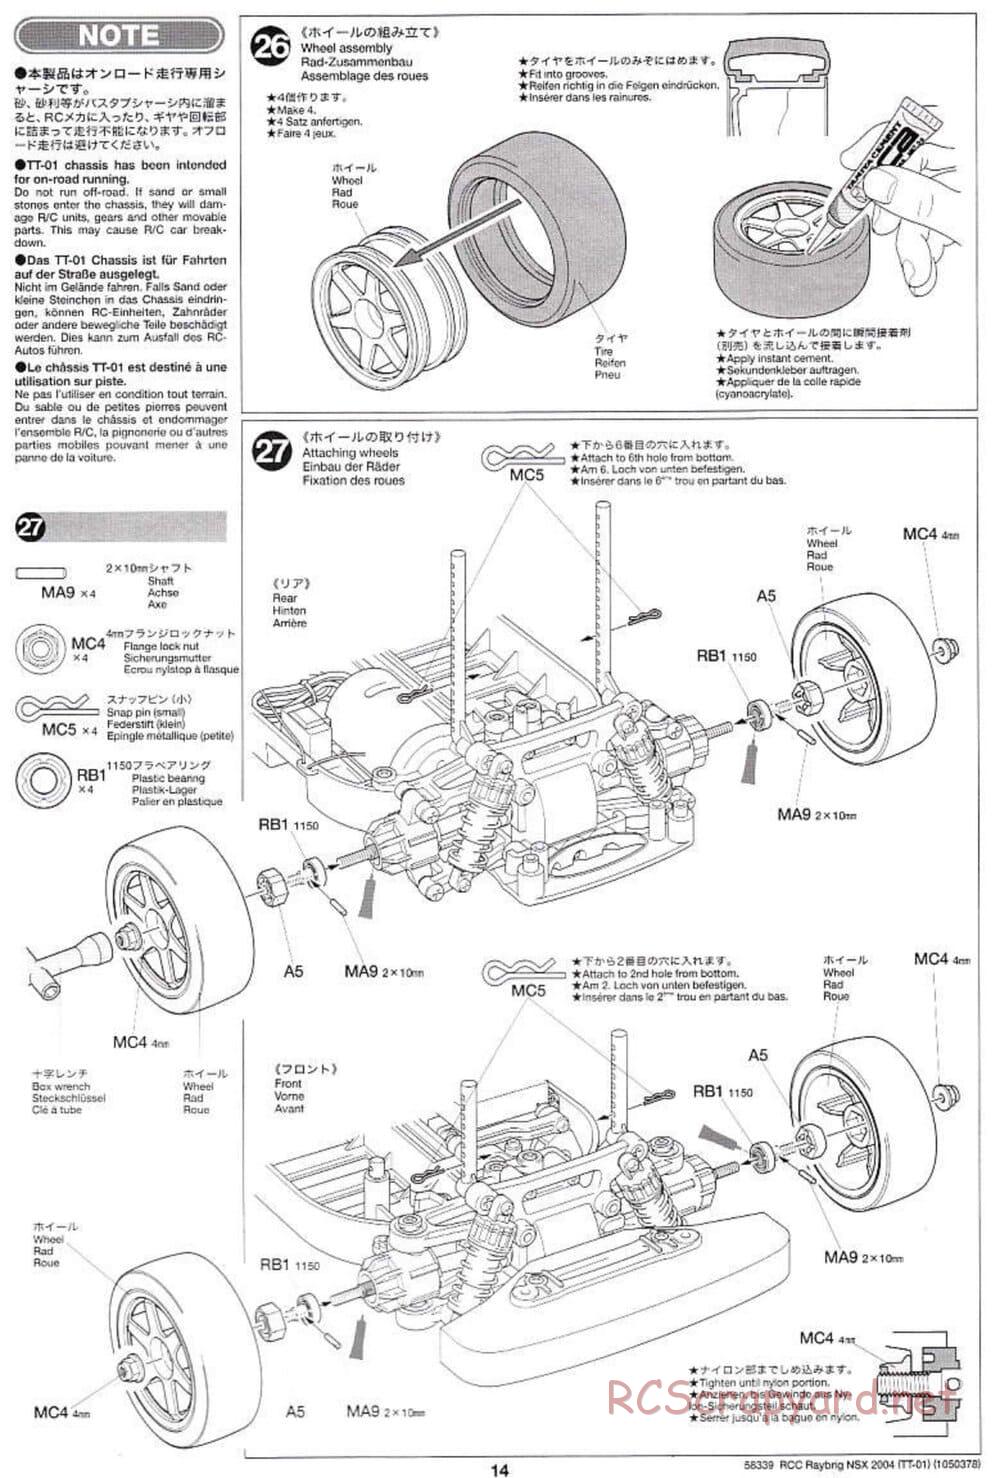 Tamiya - Raybrig NSX 2004 Chassis - Manual - Page 14